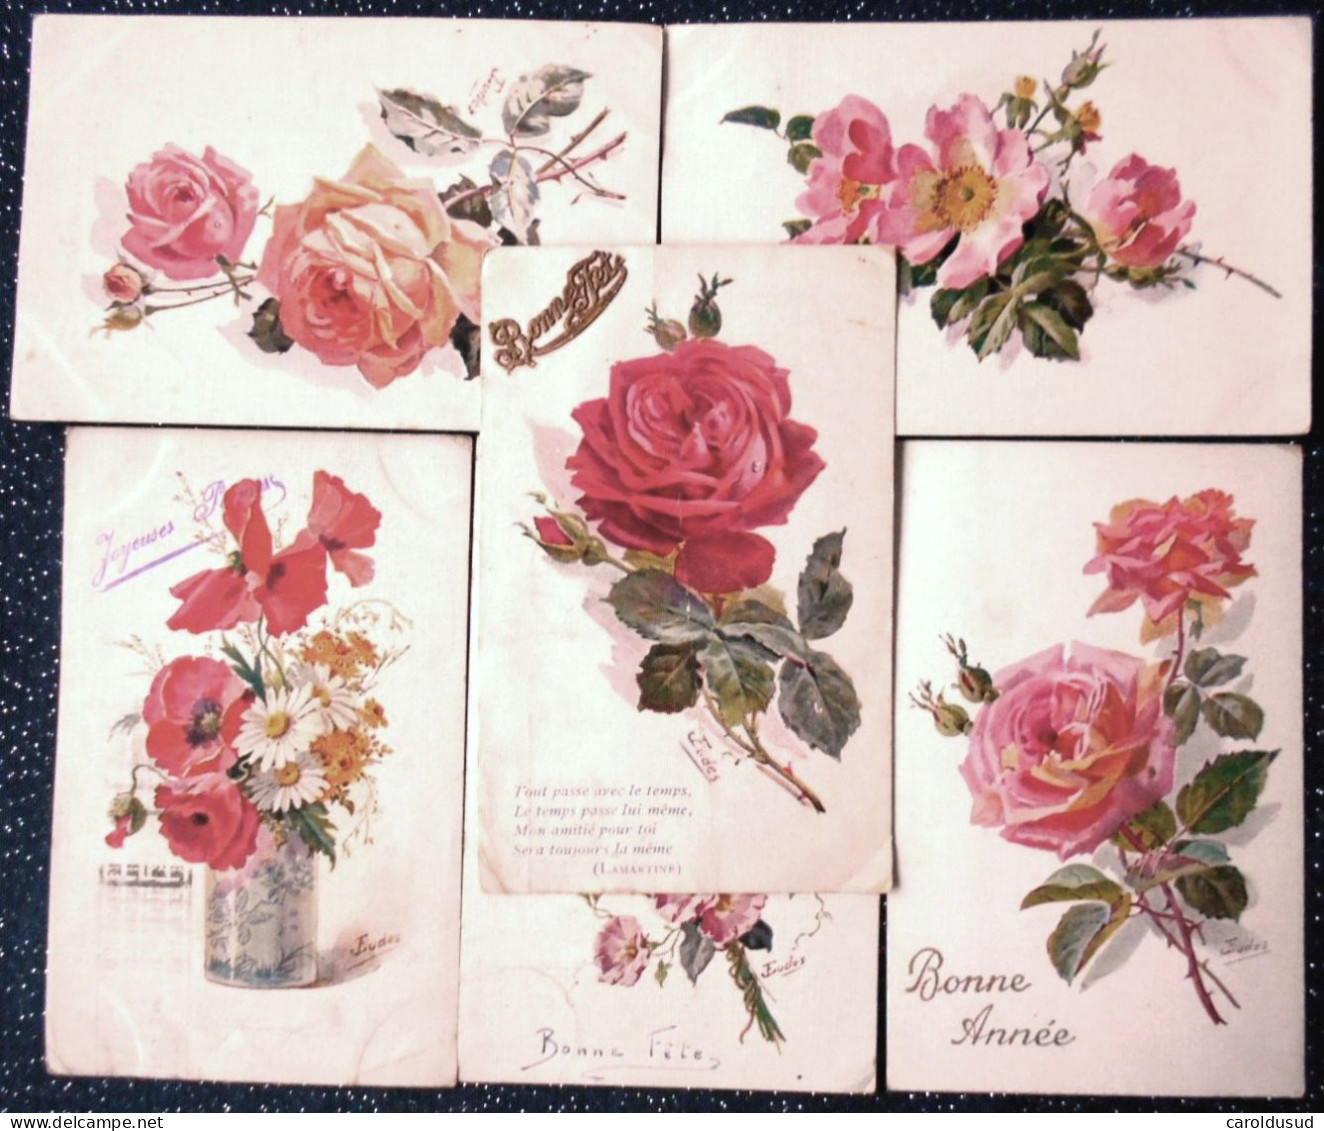 CPA Lot 6 X Litho Illustrateur EUDE  BOUQUET FLEURS FLEUR EGLANTIER BLEUET Rose VOEUX LANGAGE - Sammlungen & Sammellose